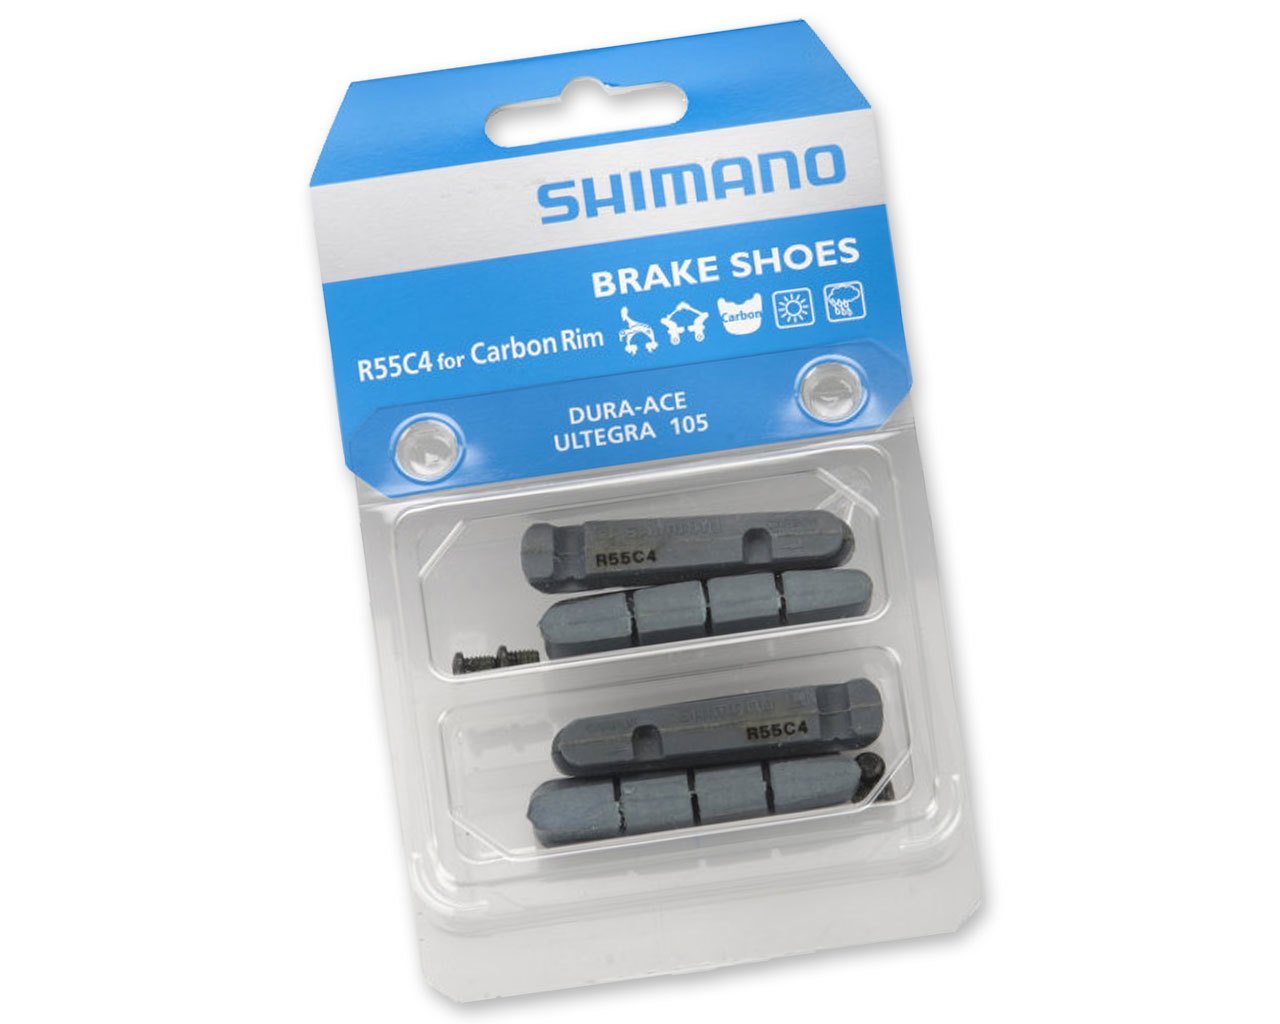 R55C4 brake pads for carbon rims (2 pairs) Shimano brake pads 